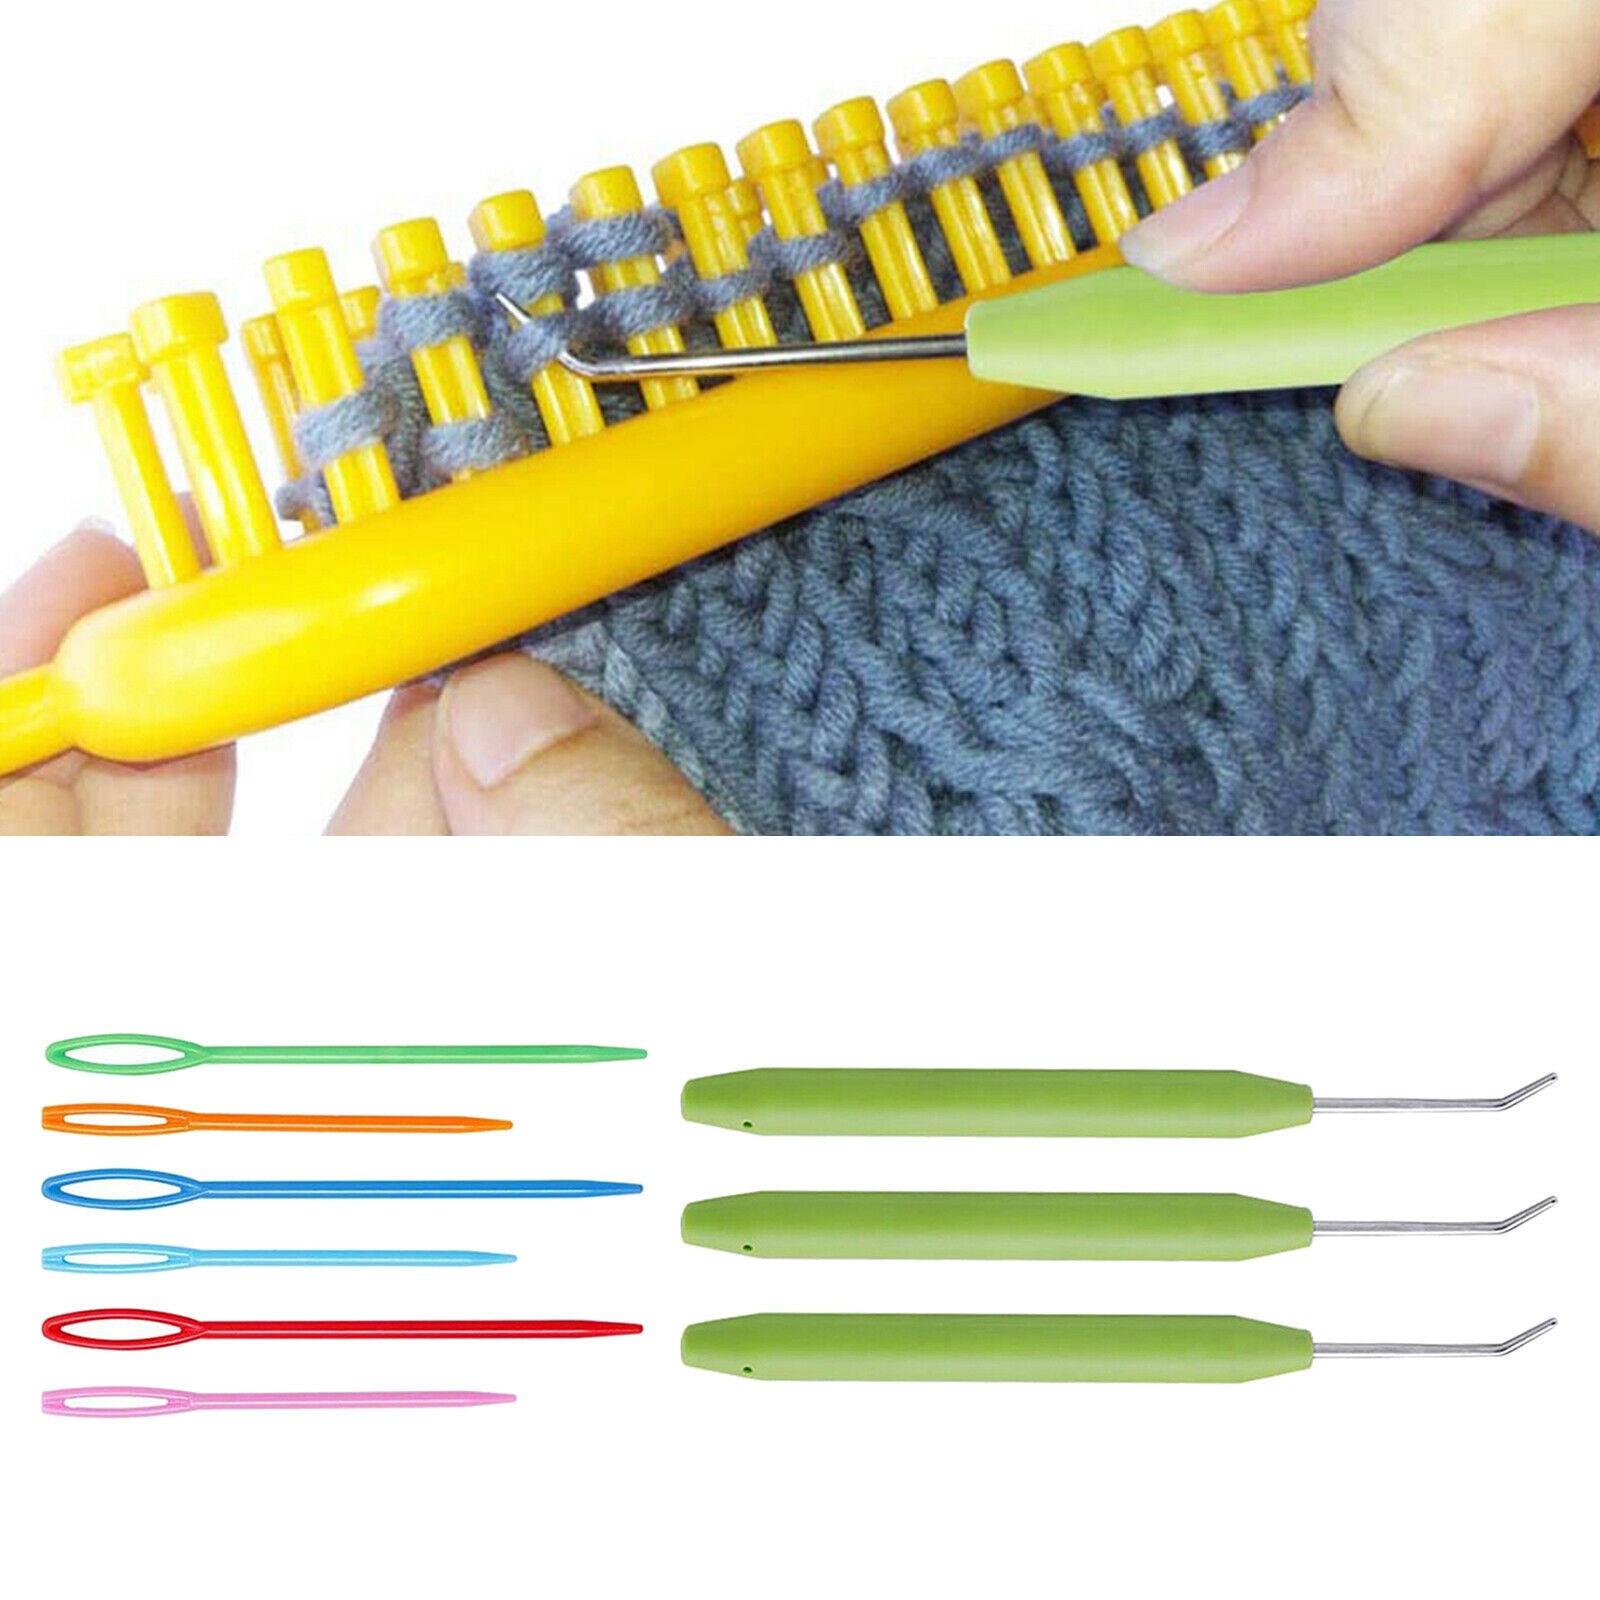 9x Crochet Hooks Set Knitting Needles for Arthritic Hands Knitting Tools